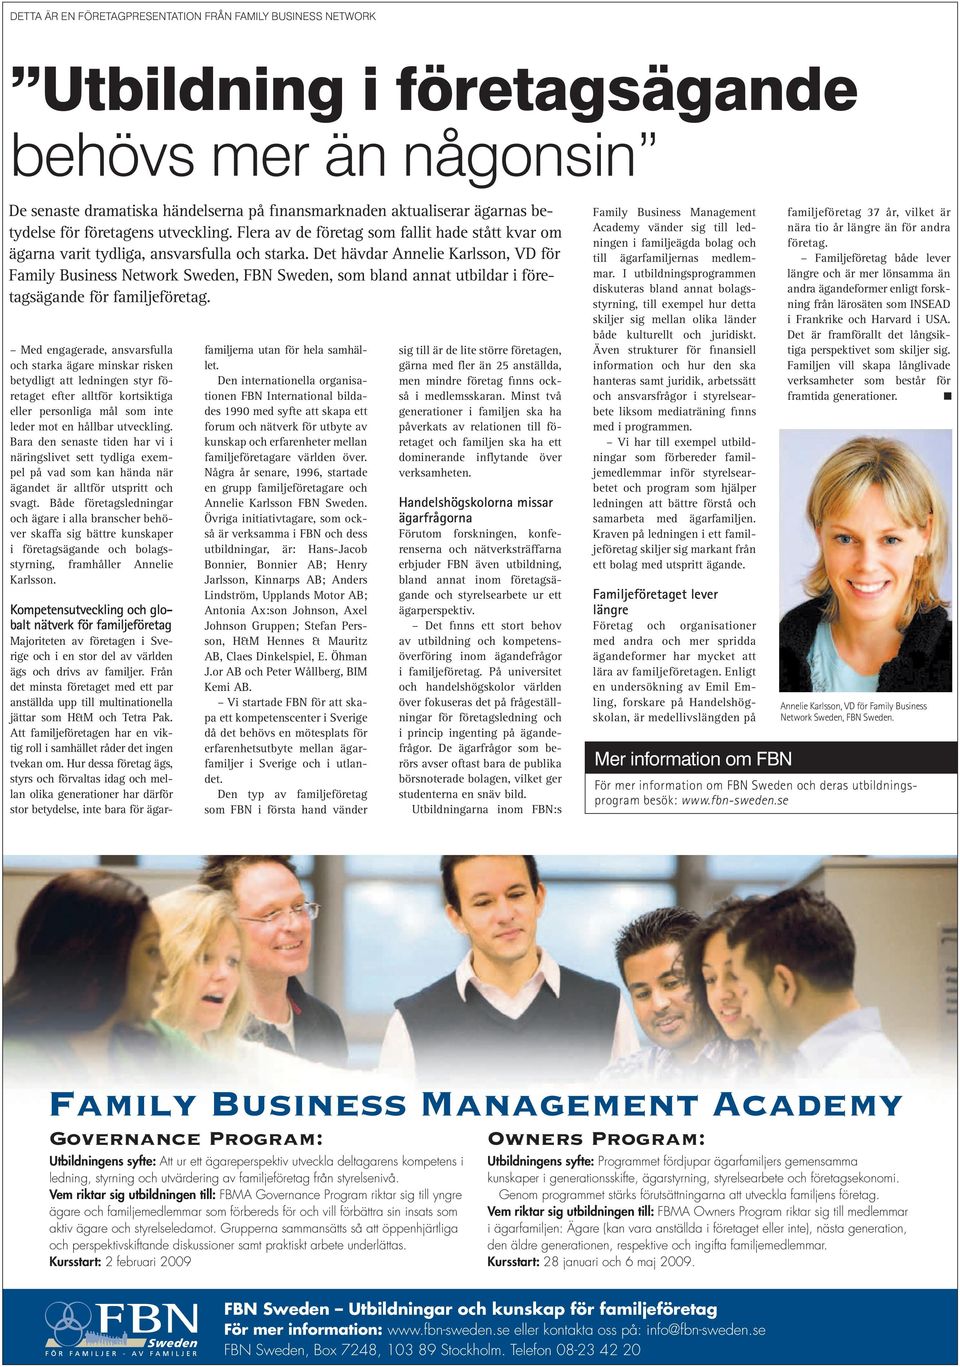 Det hävdar Annelie Karlsson, VD för Family Business Network Sweden, FBN Sweden, som bland annat utbildar i företagsägande för familjeföretag.